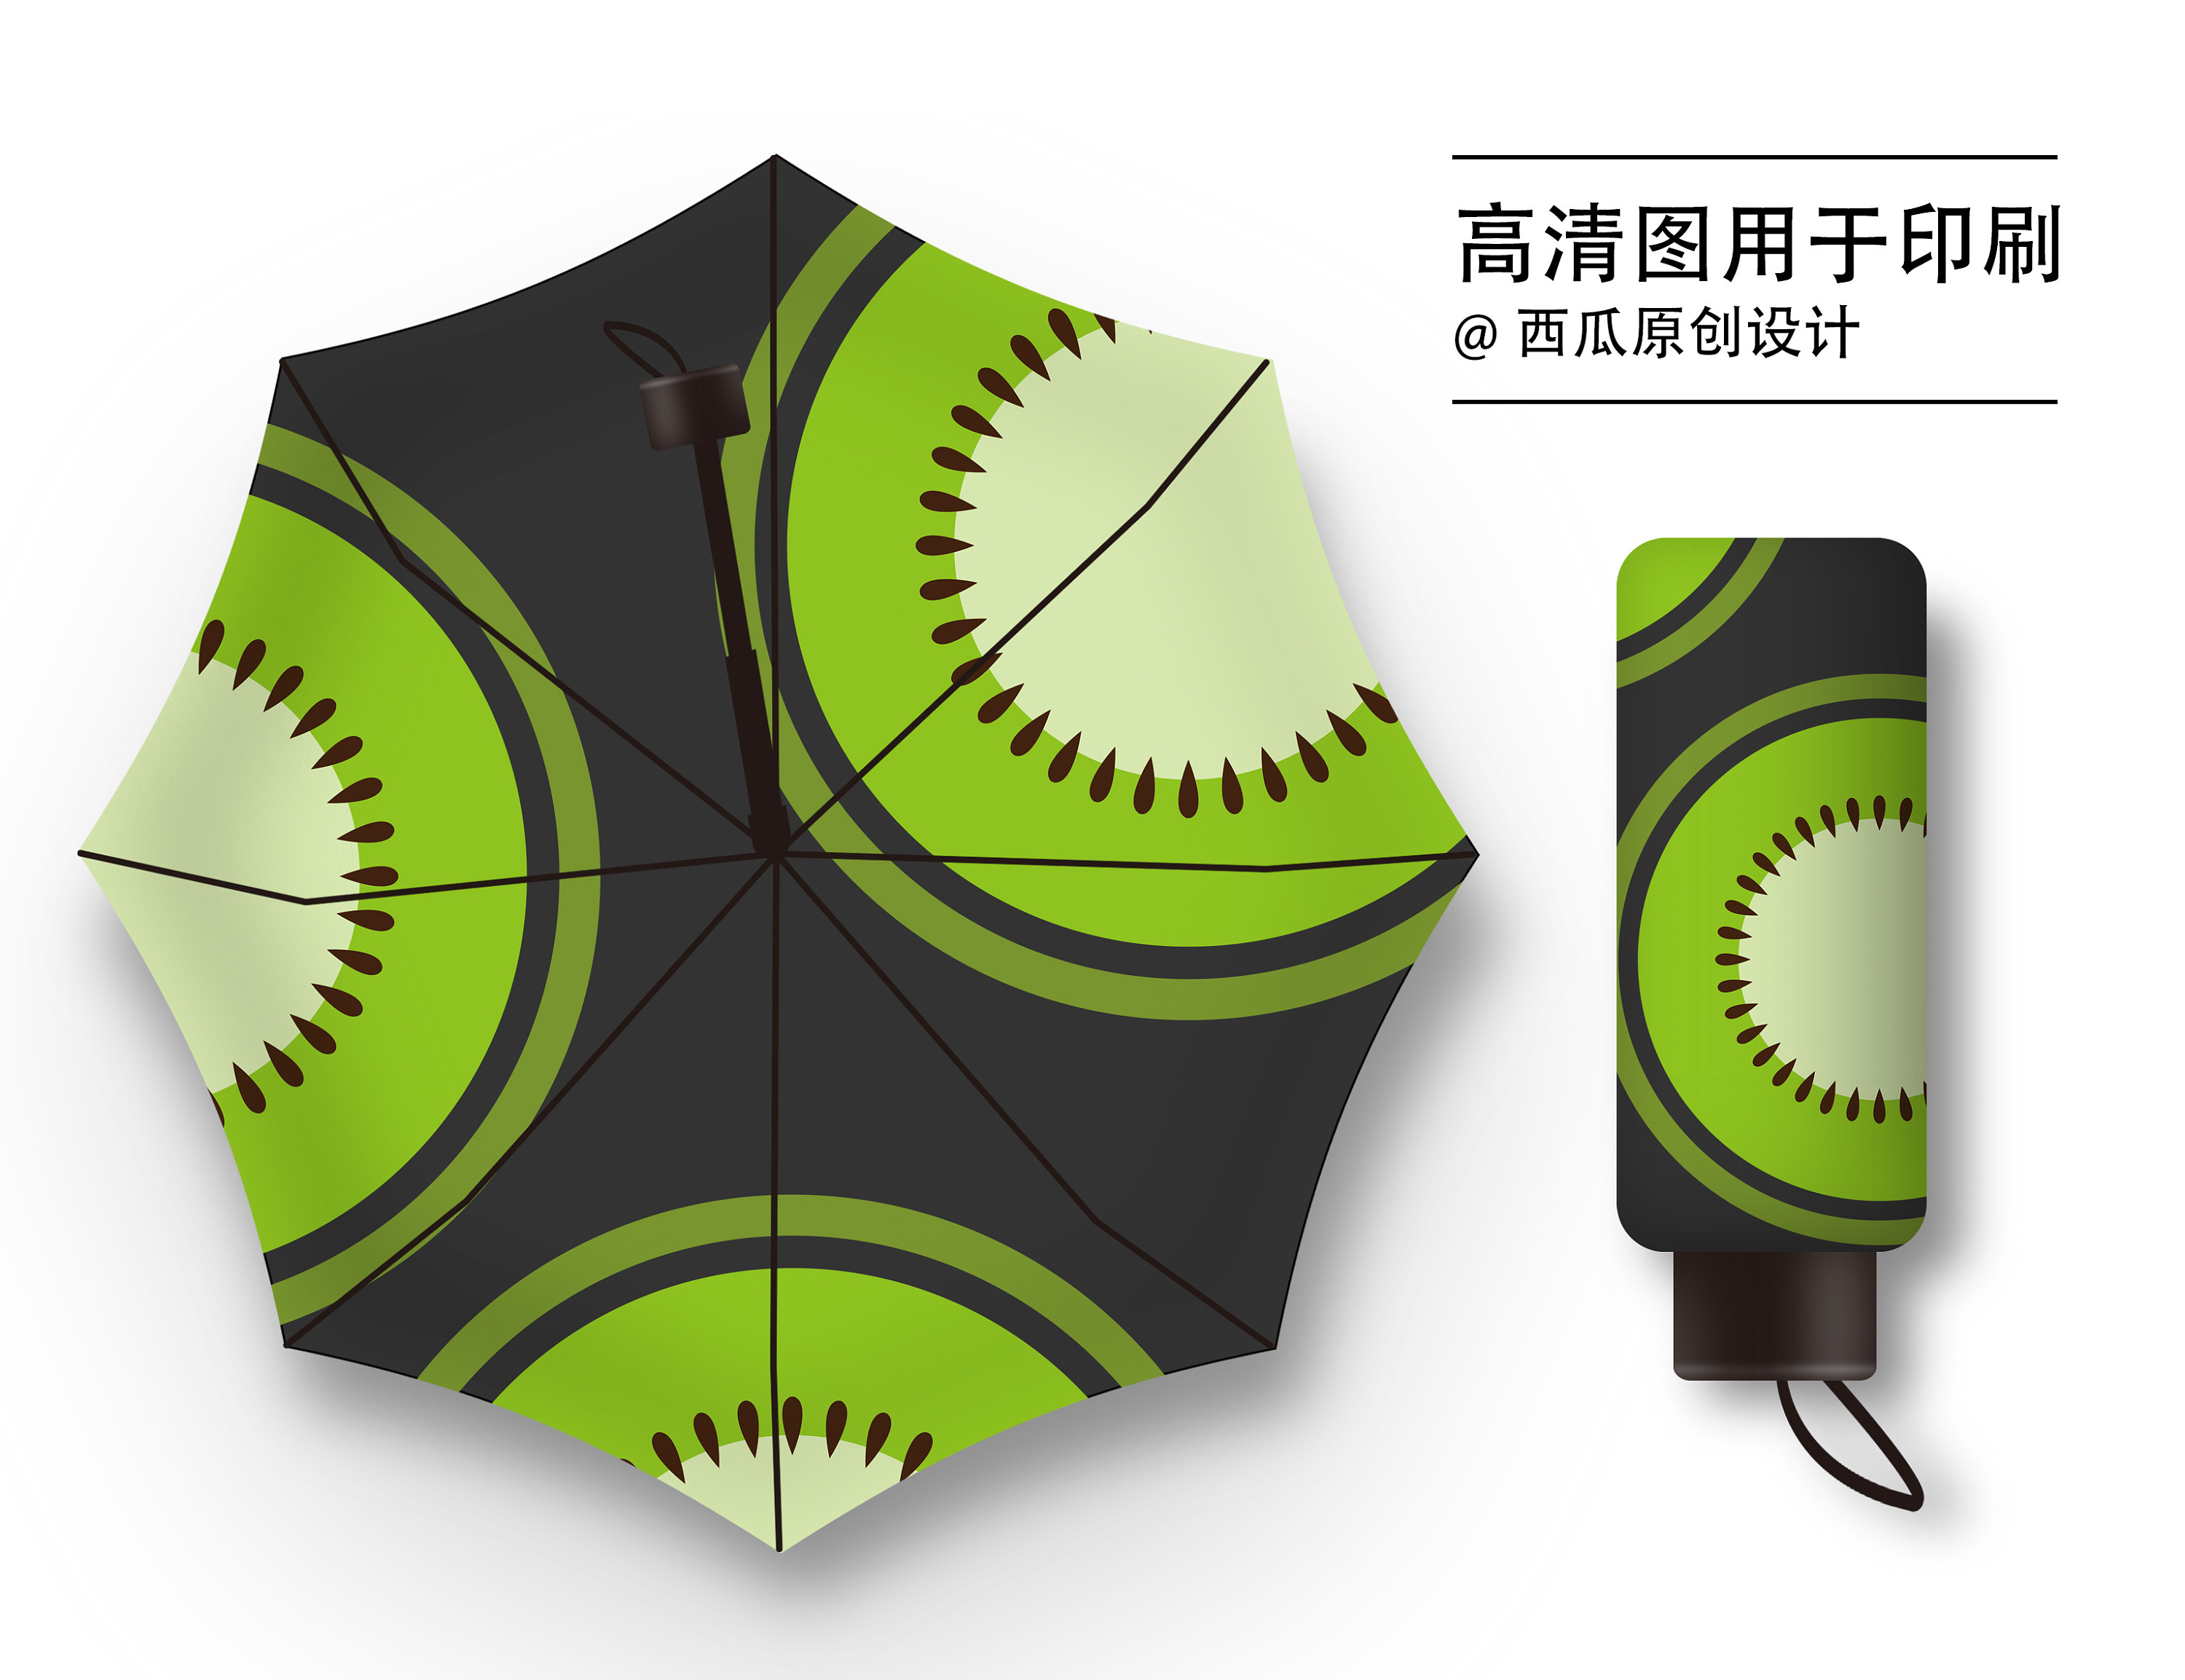 雨伞创新创意产品设计图片